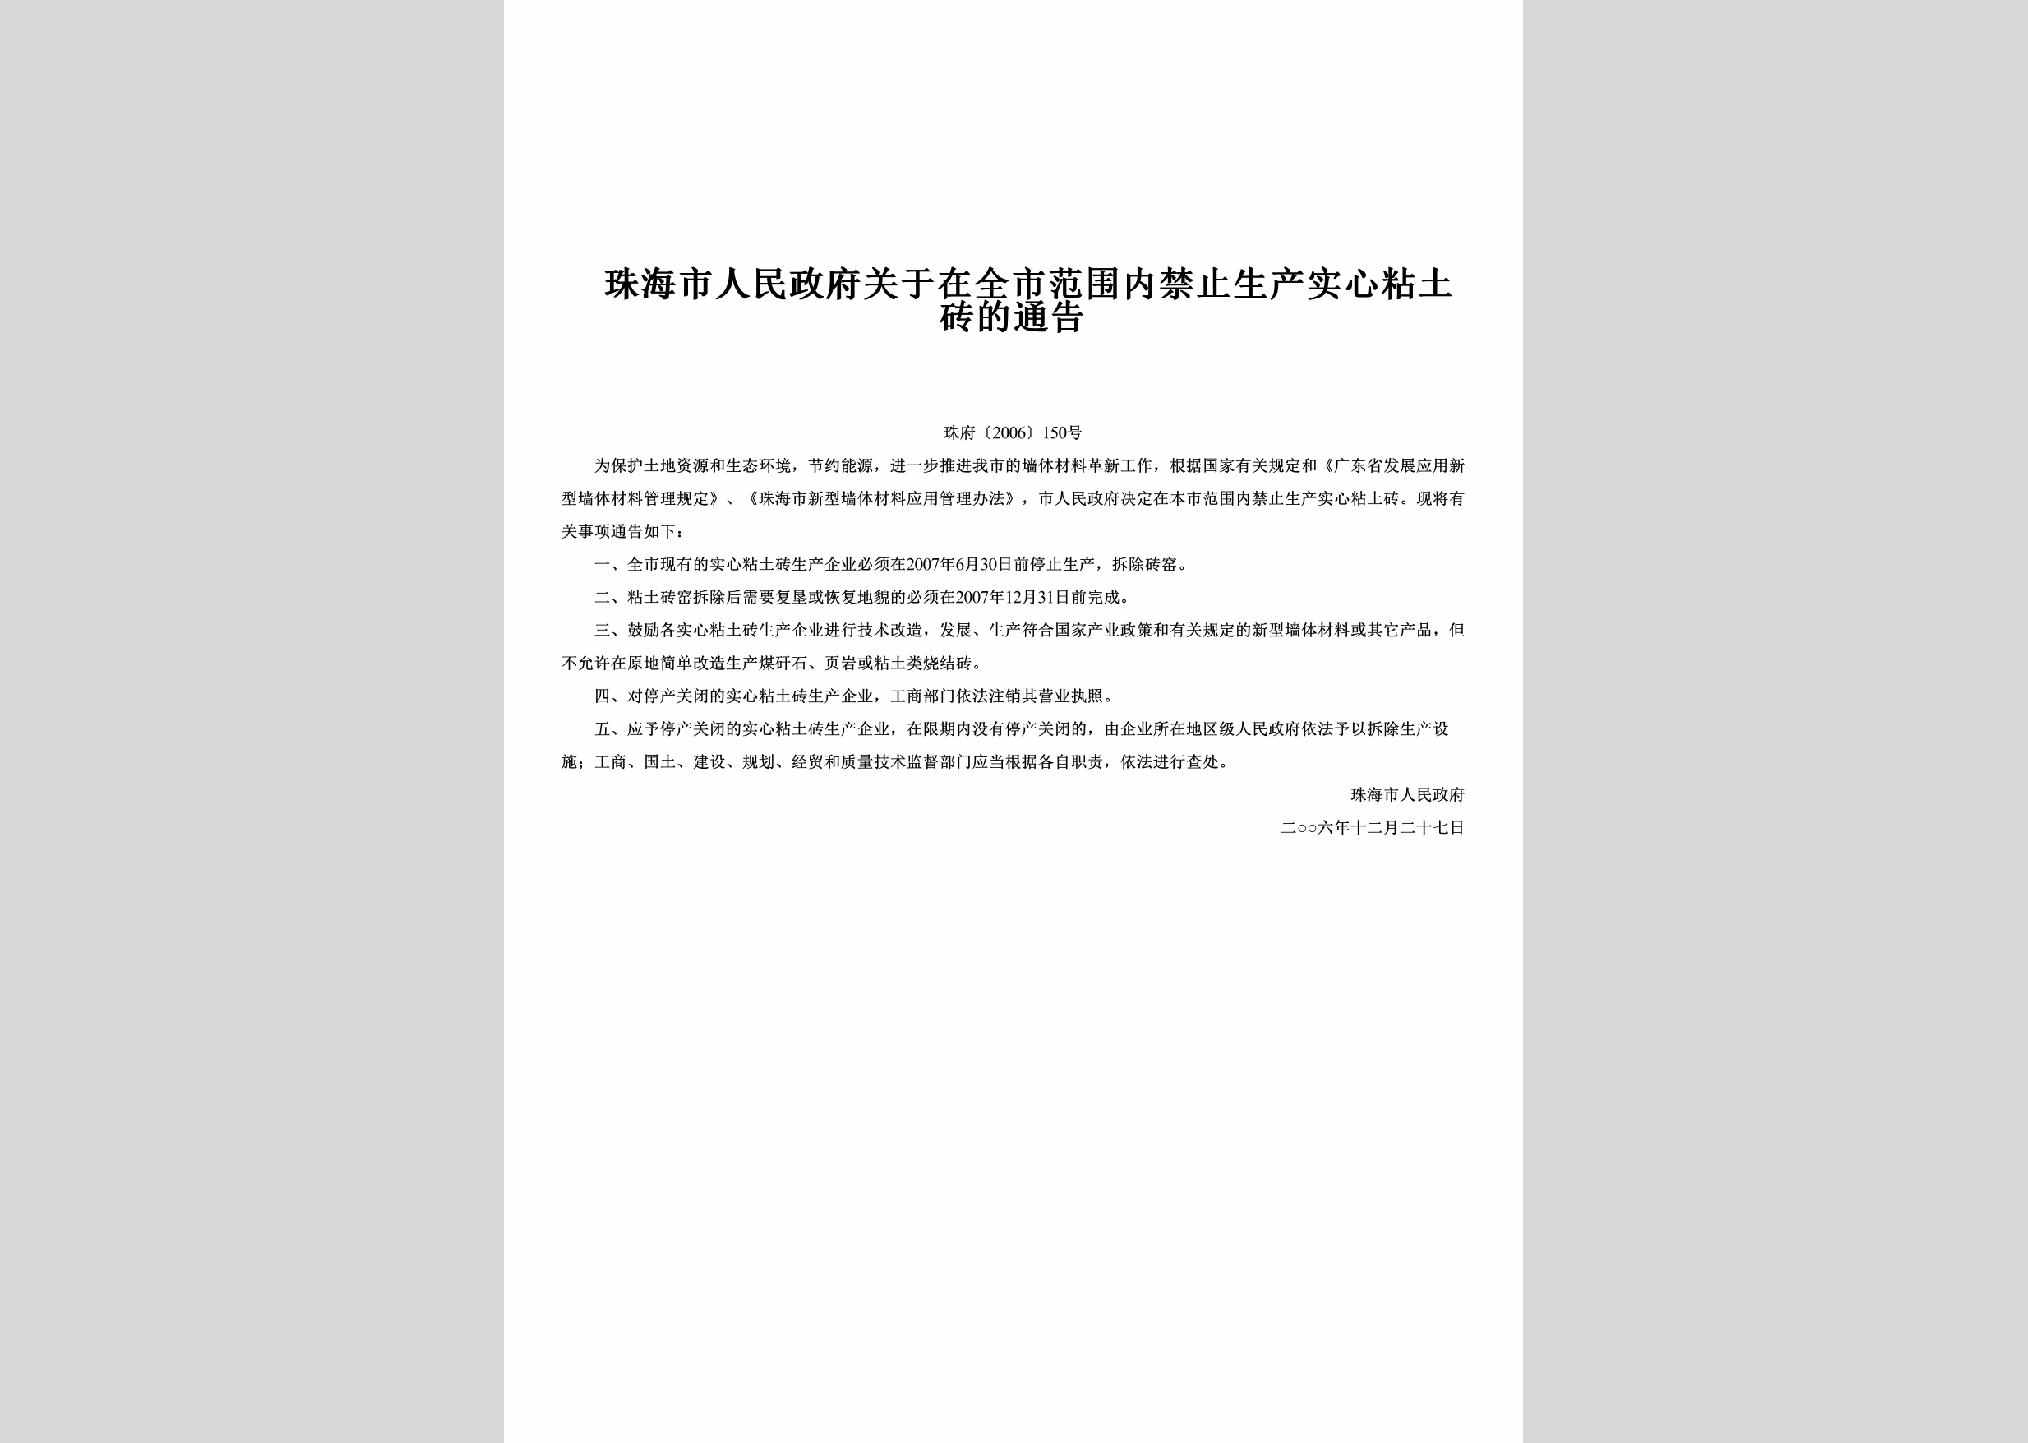 珠府[2006]150号：关于在全市范围内禁止生产实心粘土砖的通告